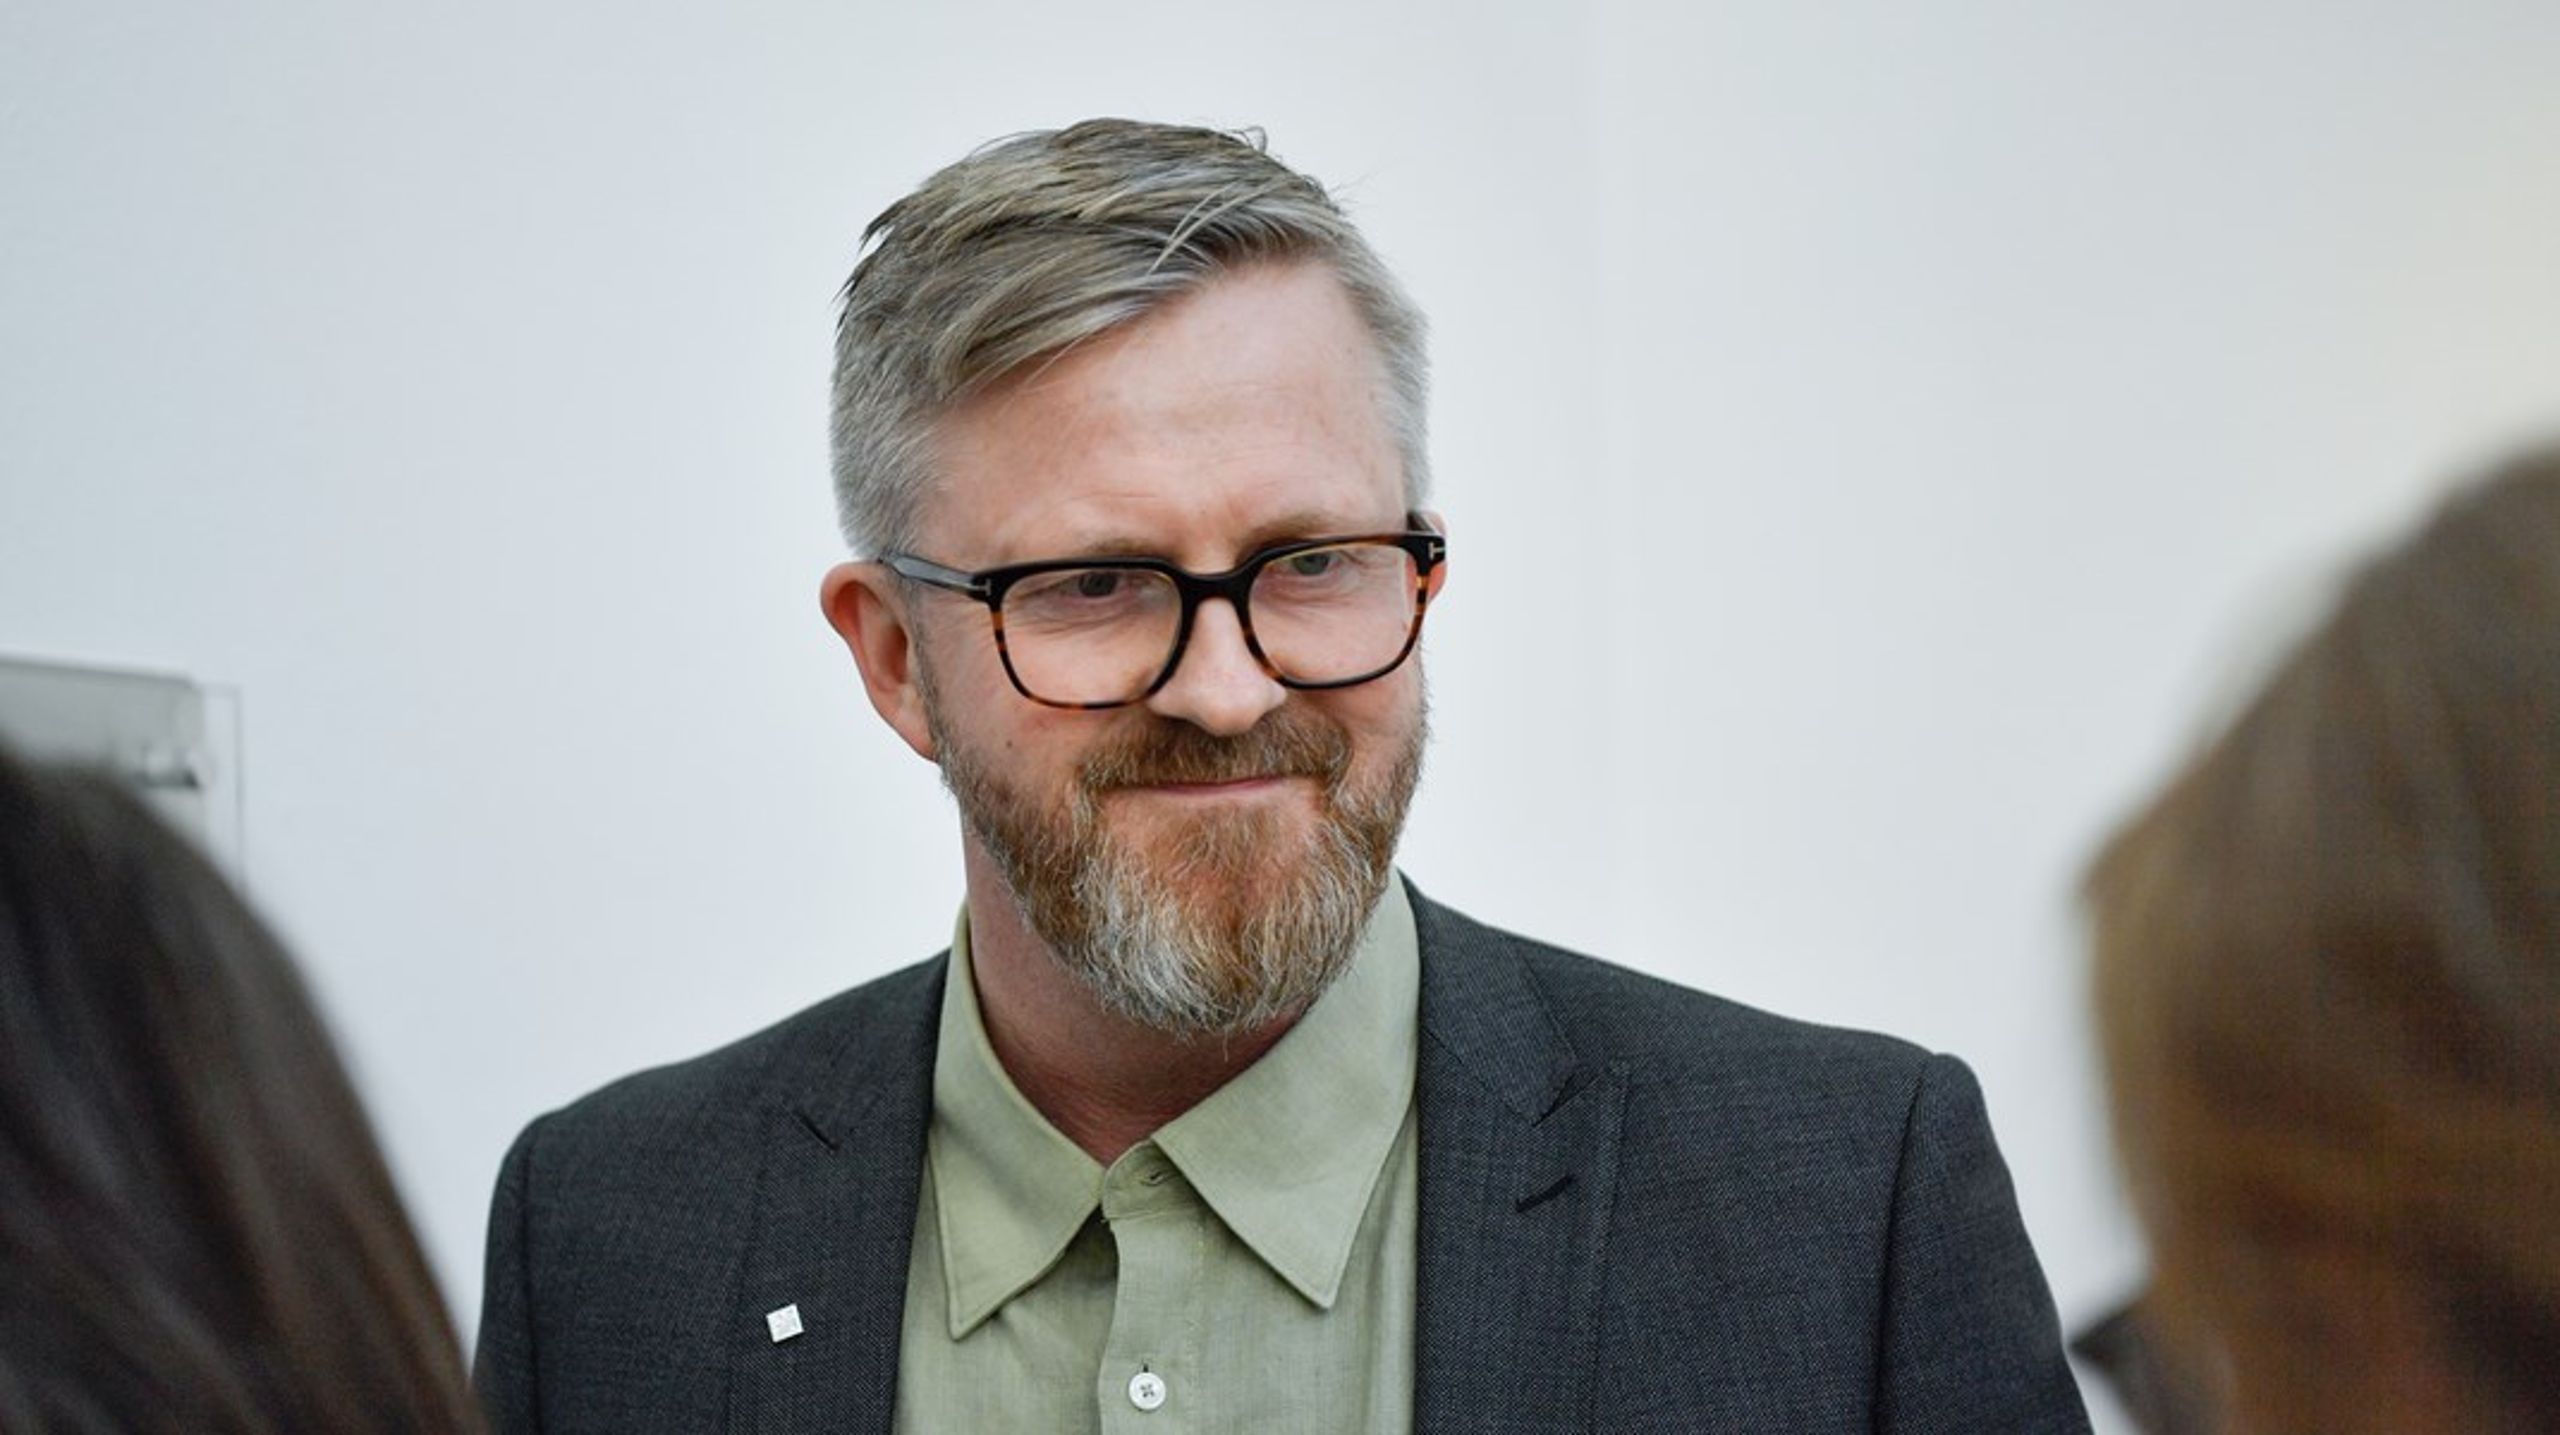 YS-leder Hans-Erik Skjæggerud er skuffet over regjeringens budsjettforslag, og mener mer burde ha vært gjort for å hjelpe de som sliter aller mest.